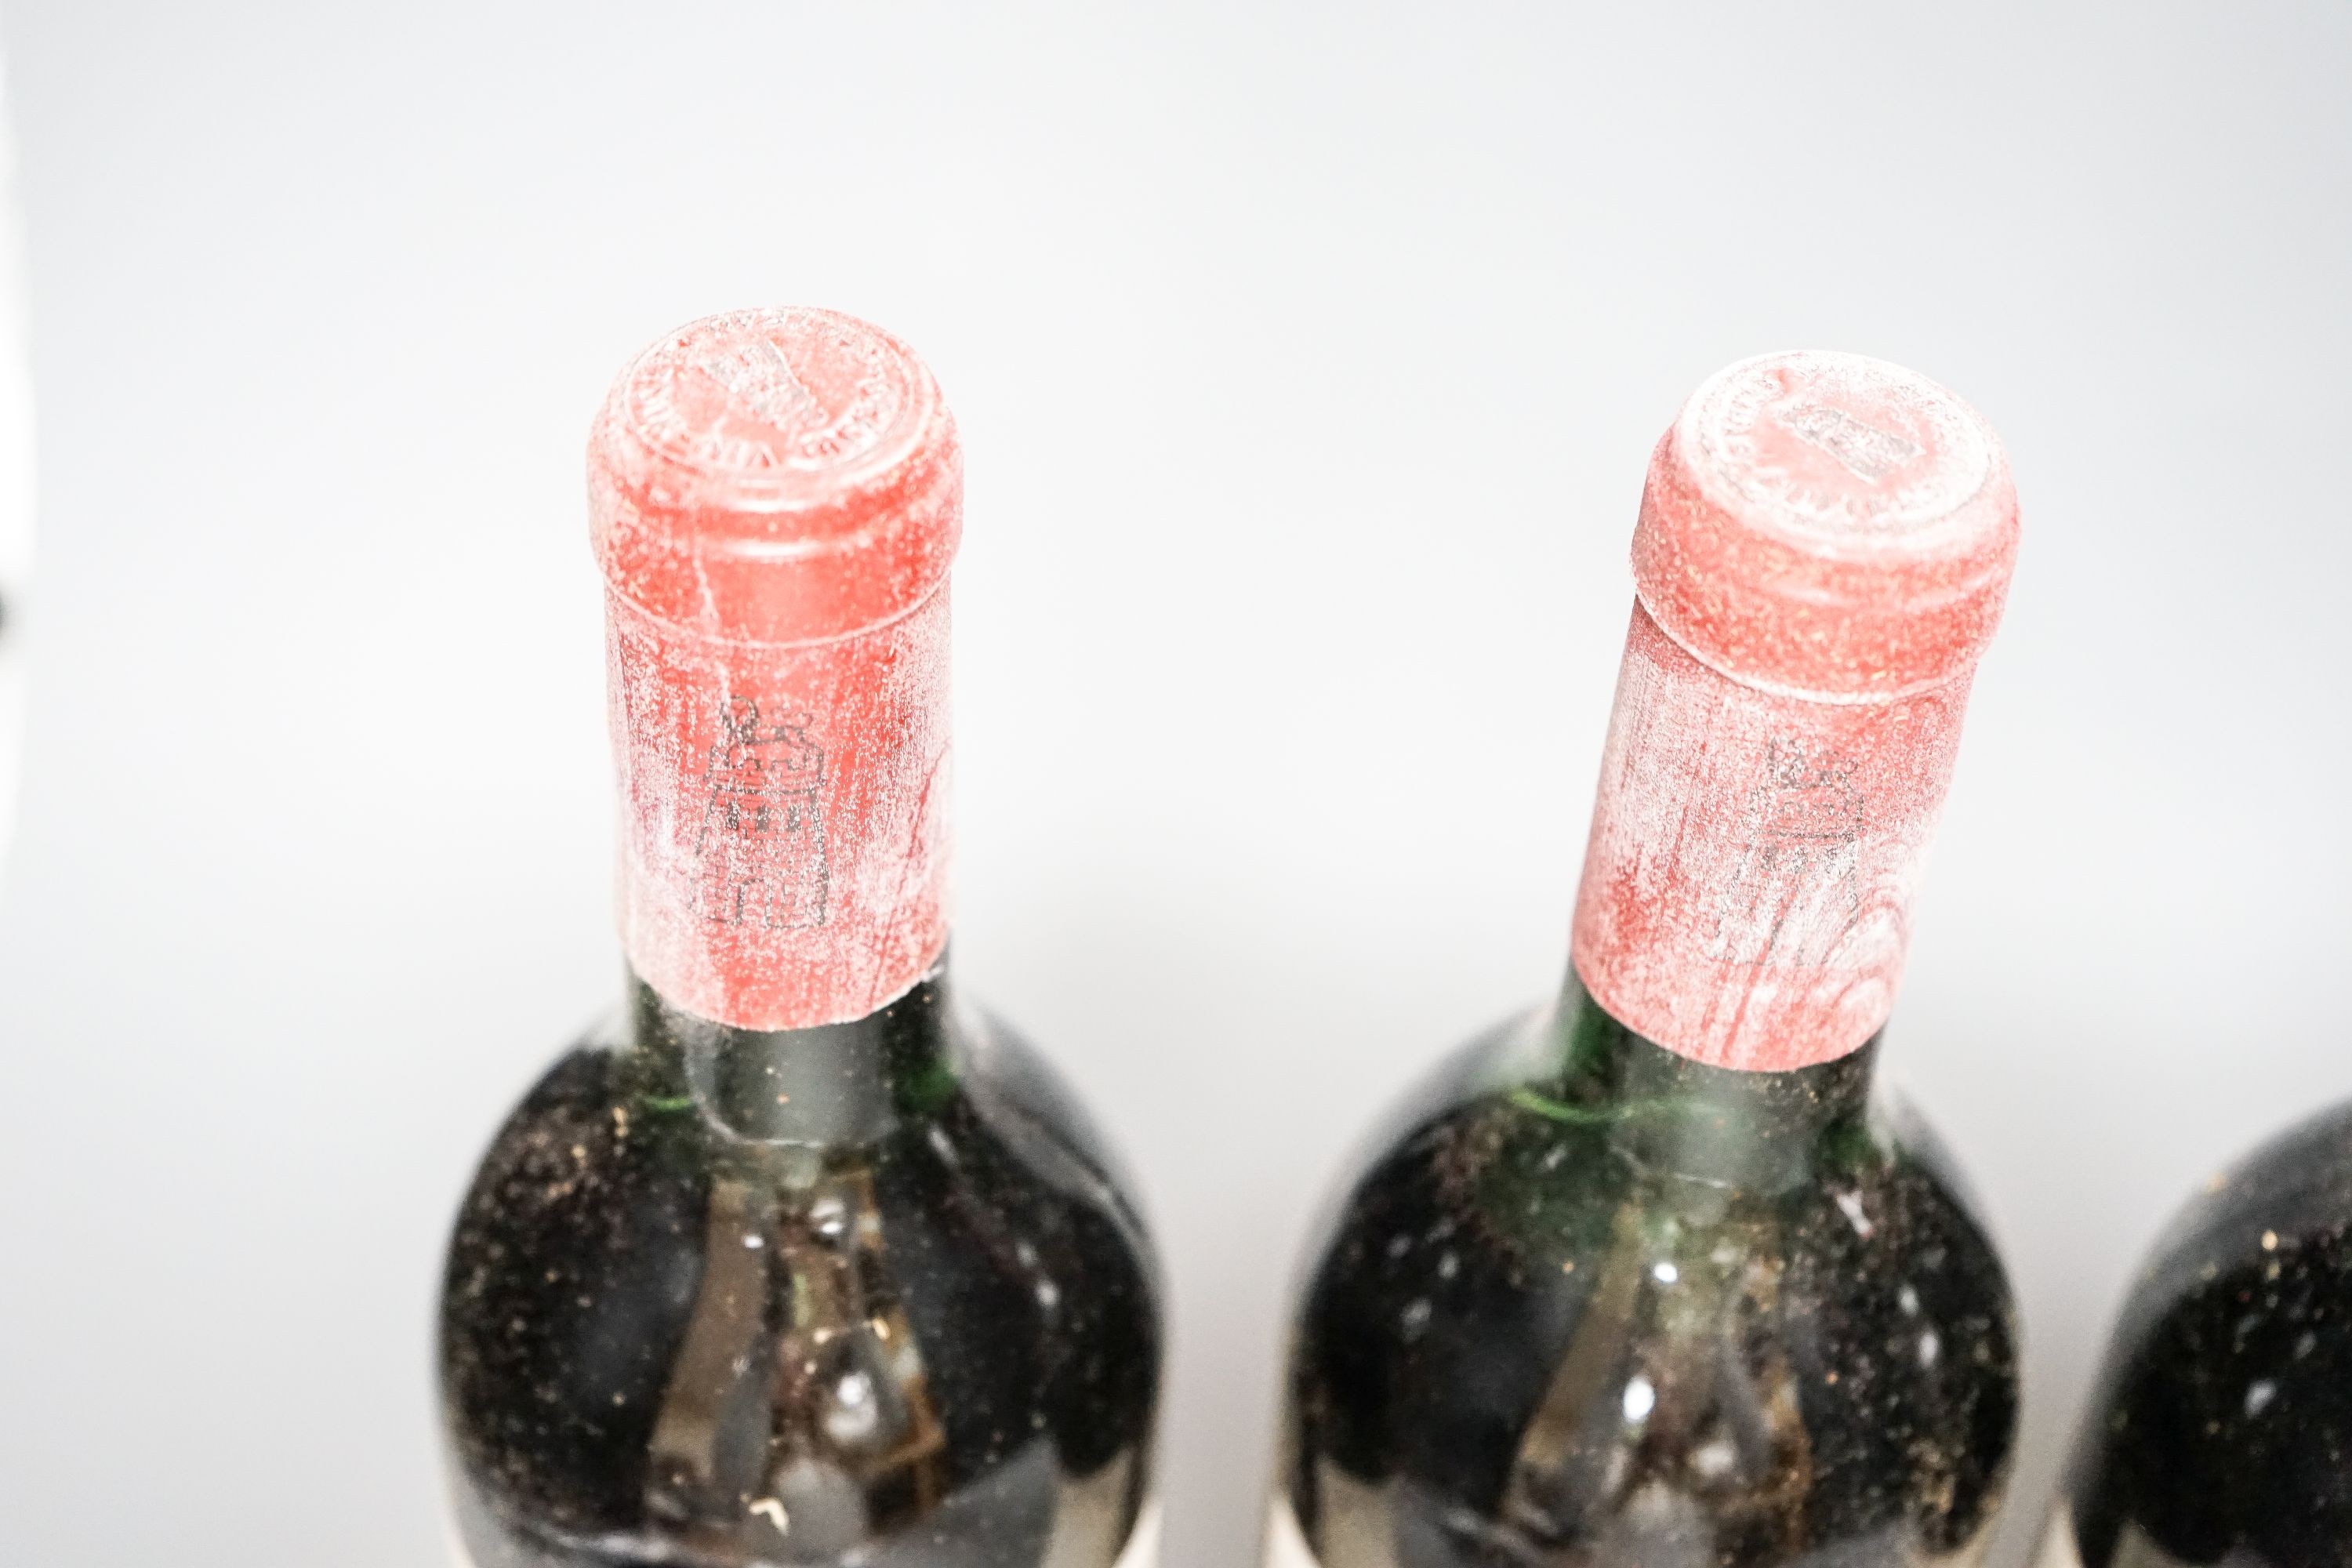 Four bottles of Grand Vin De Chateau Latour 1967